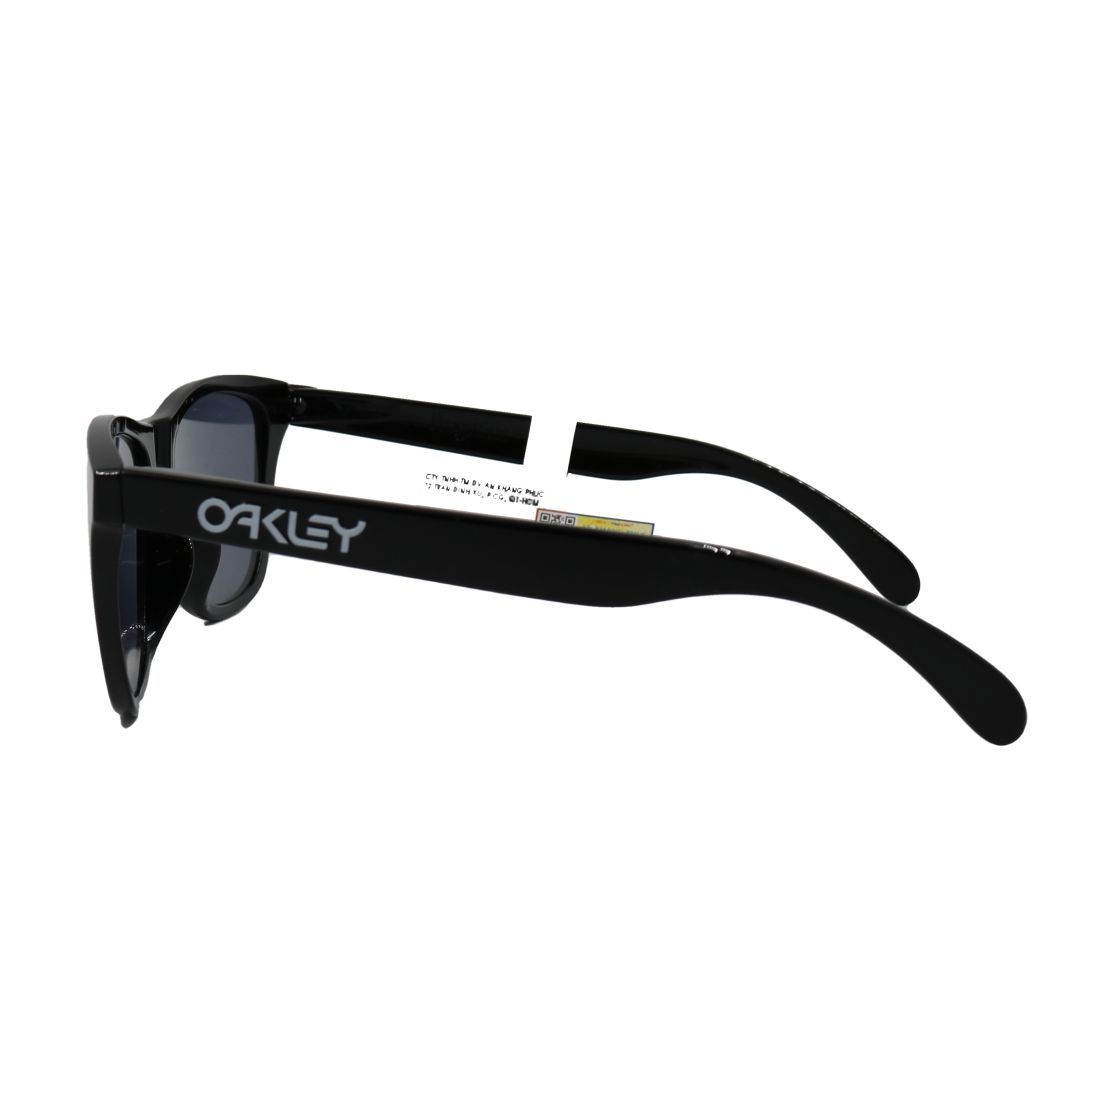  Kính mát Oakley OO9245 01 + Tặng phiếu mua tròng trị giá 500.000 vnđ 